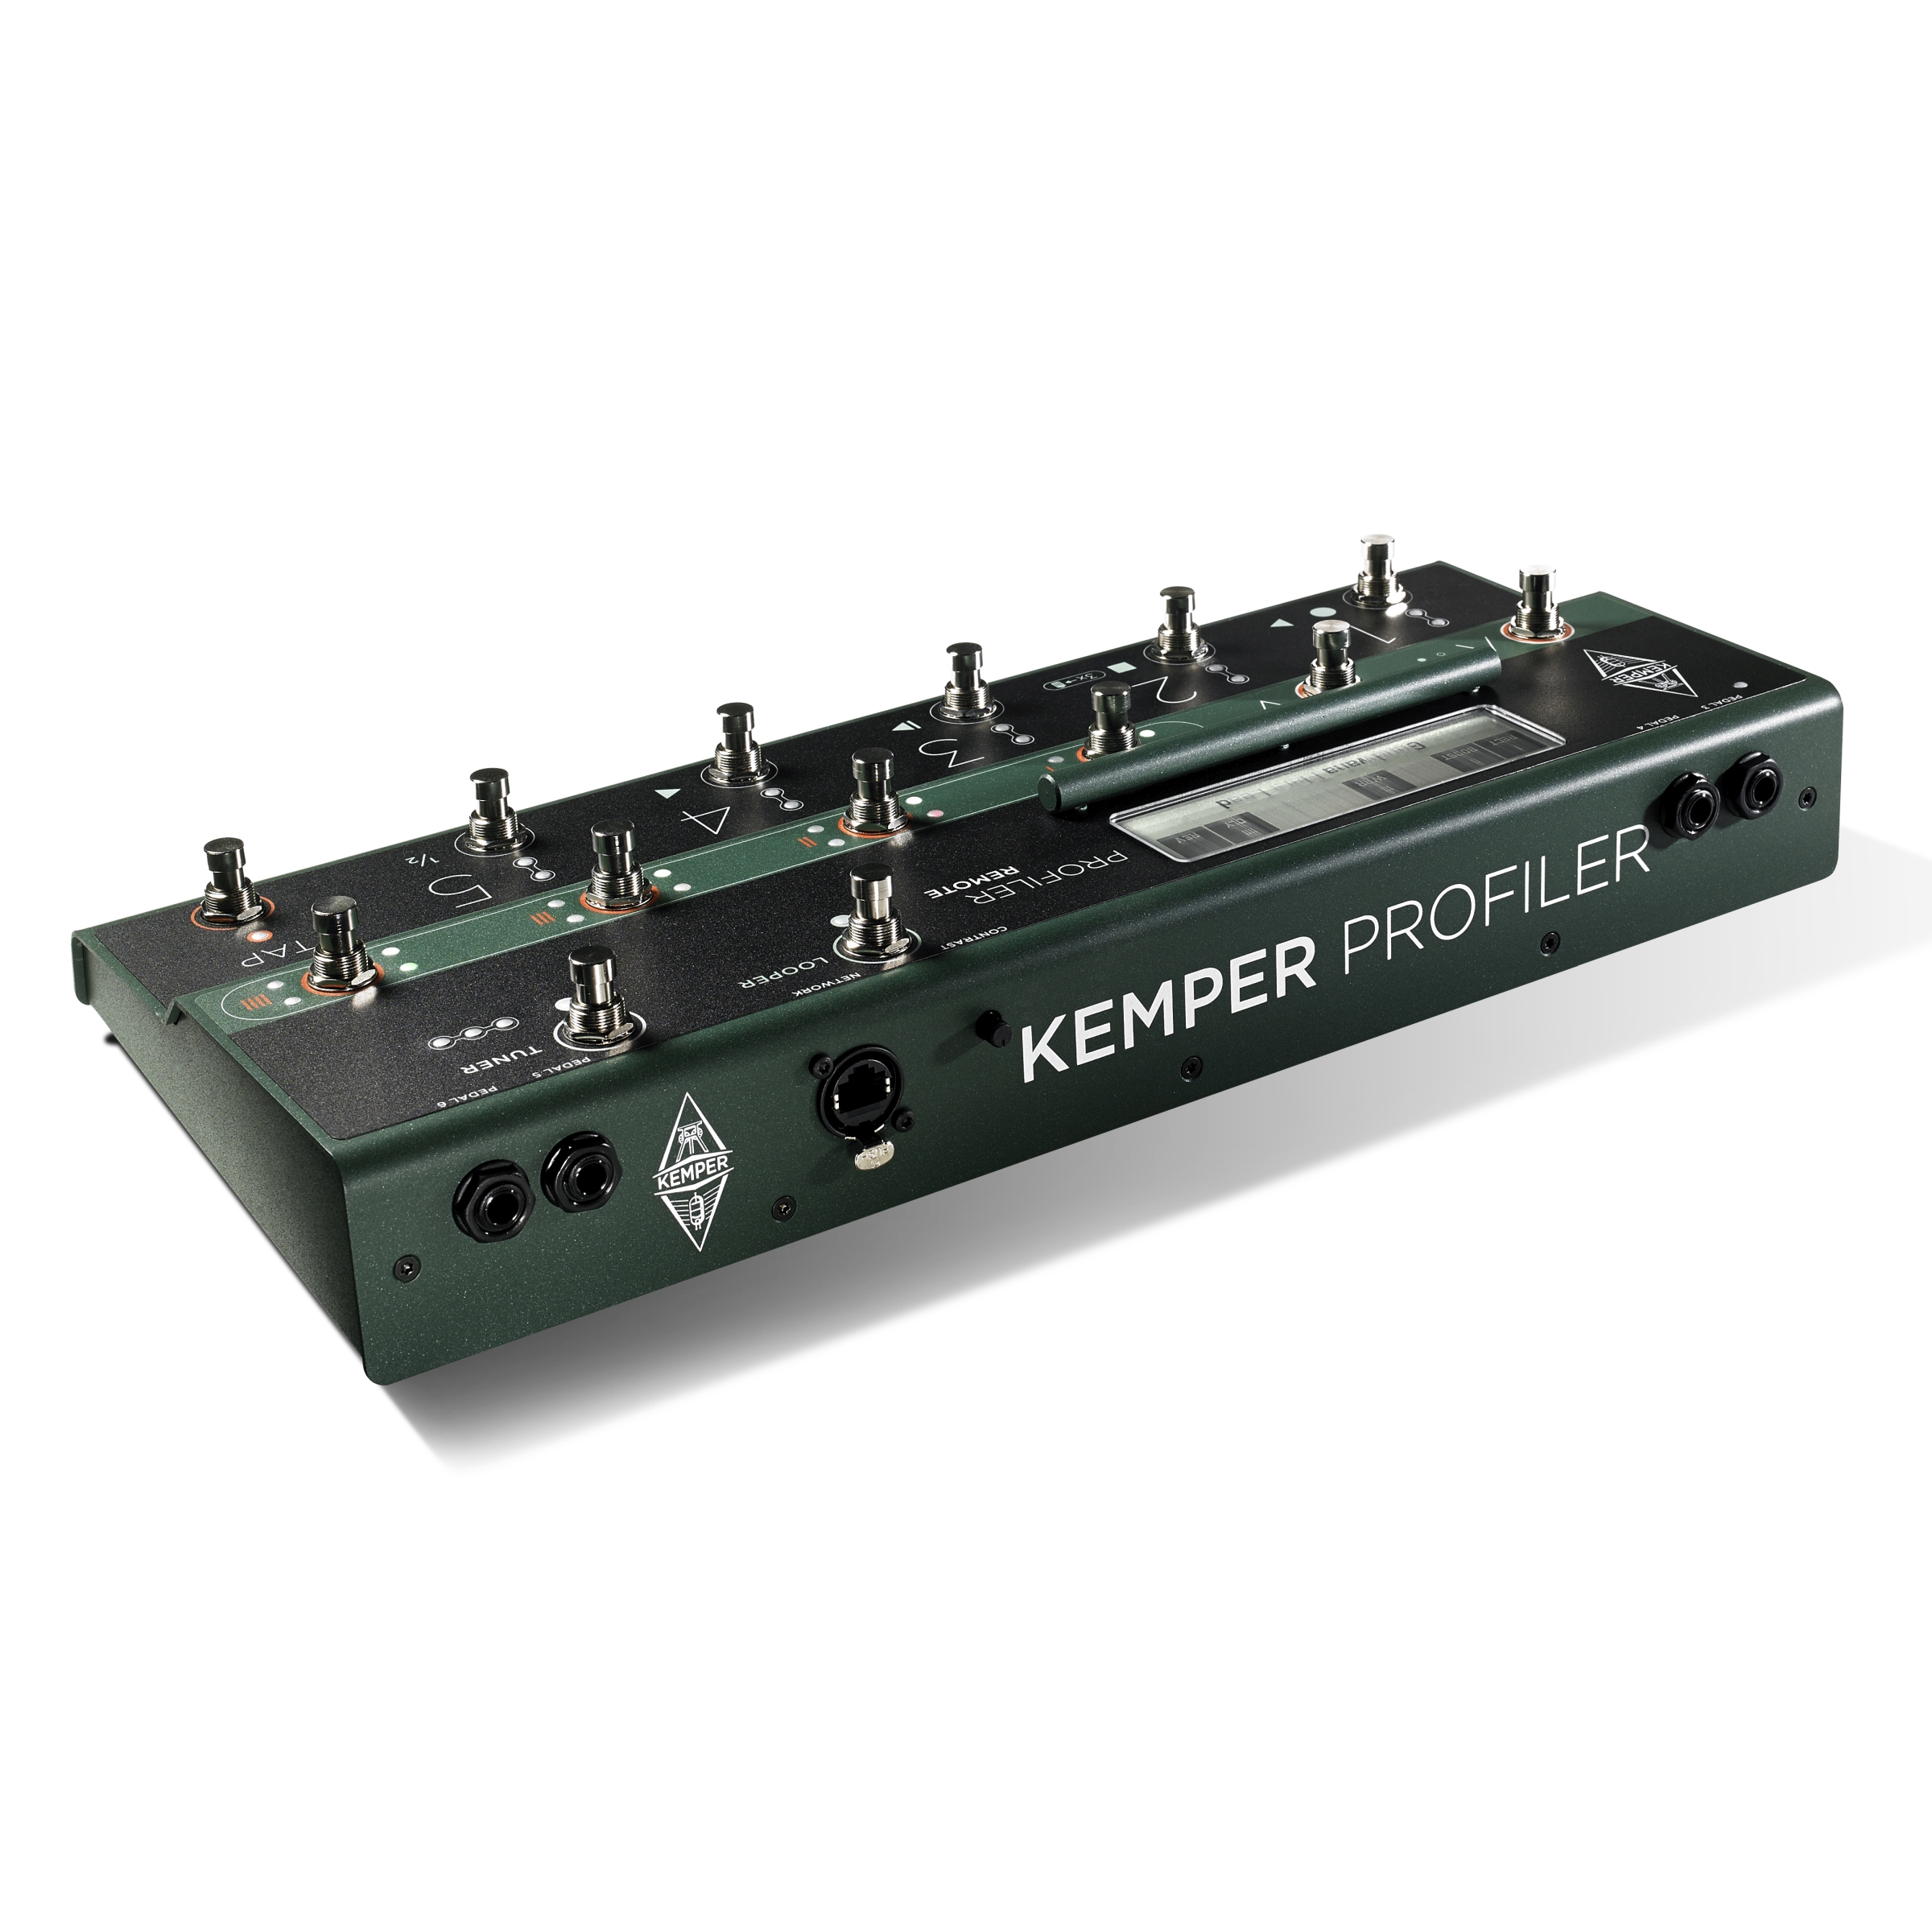 Kemper PROFILER Remote™